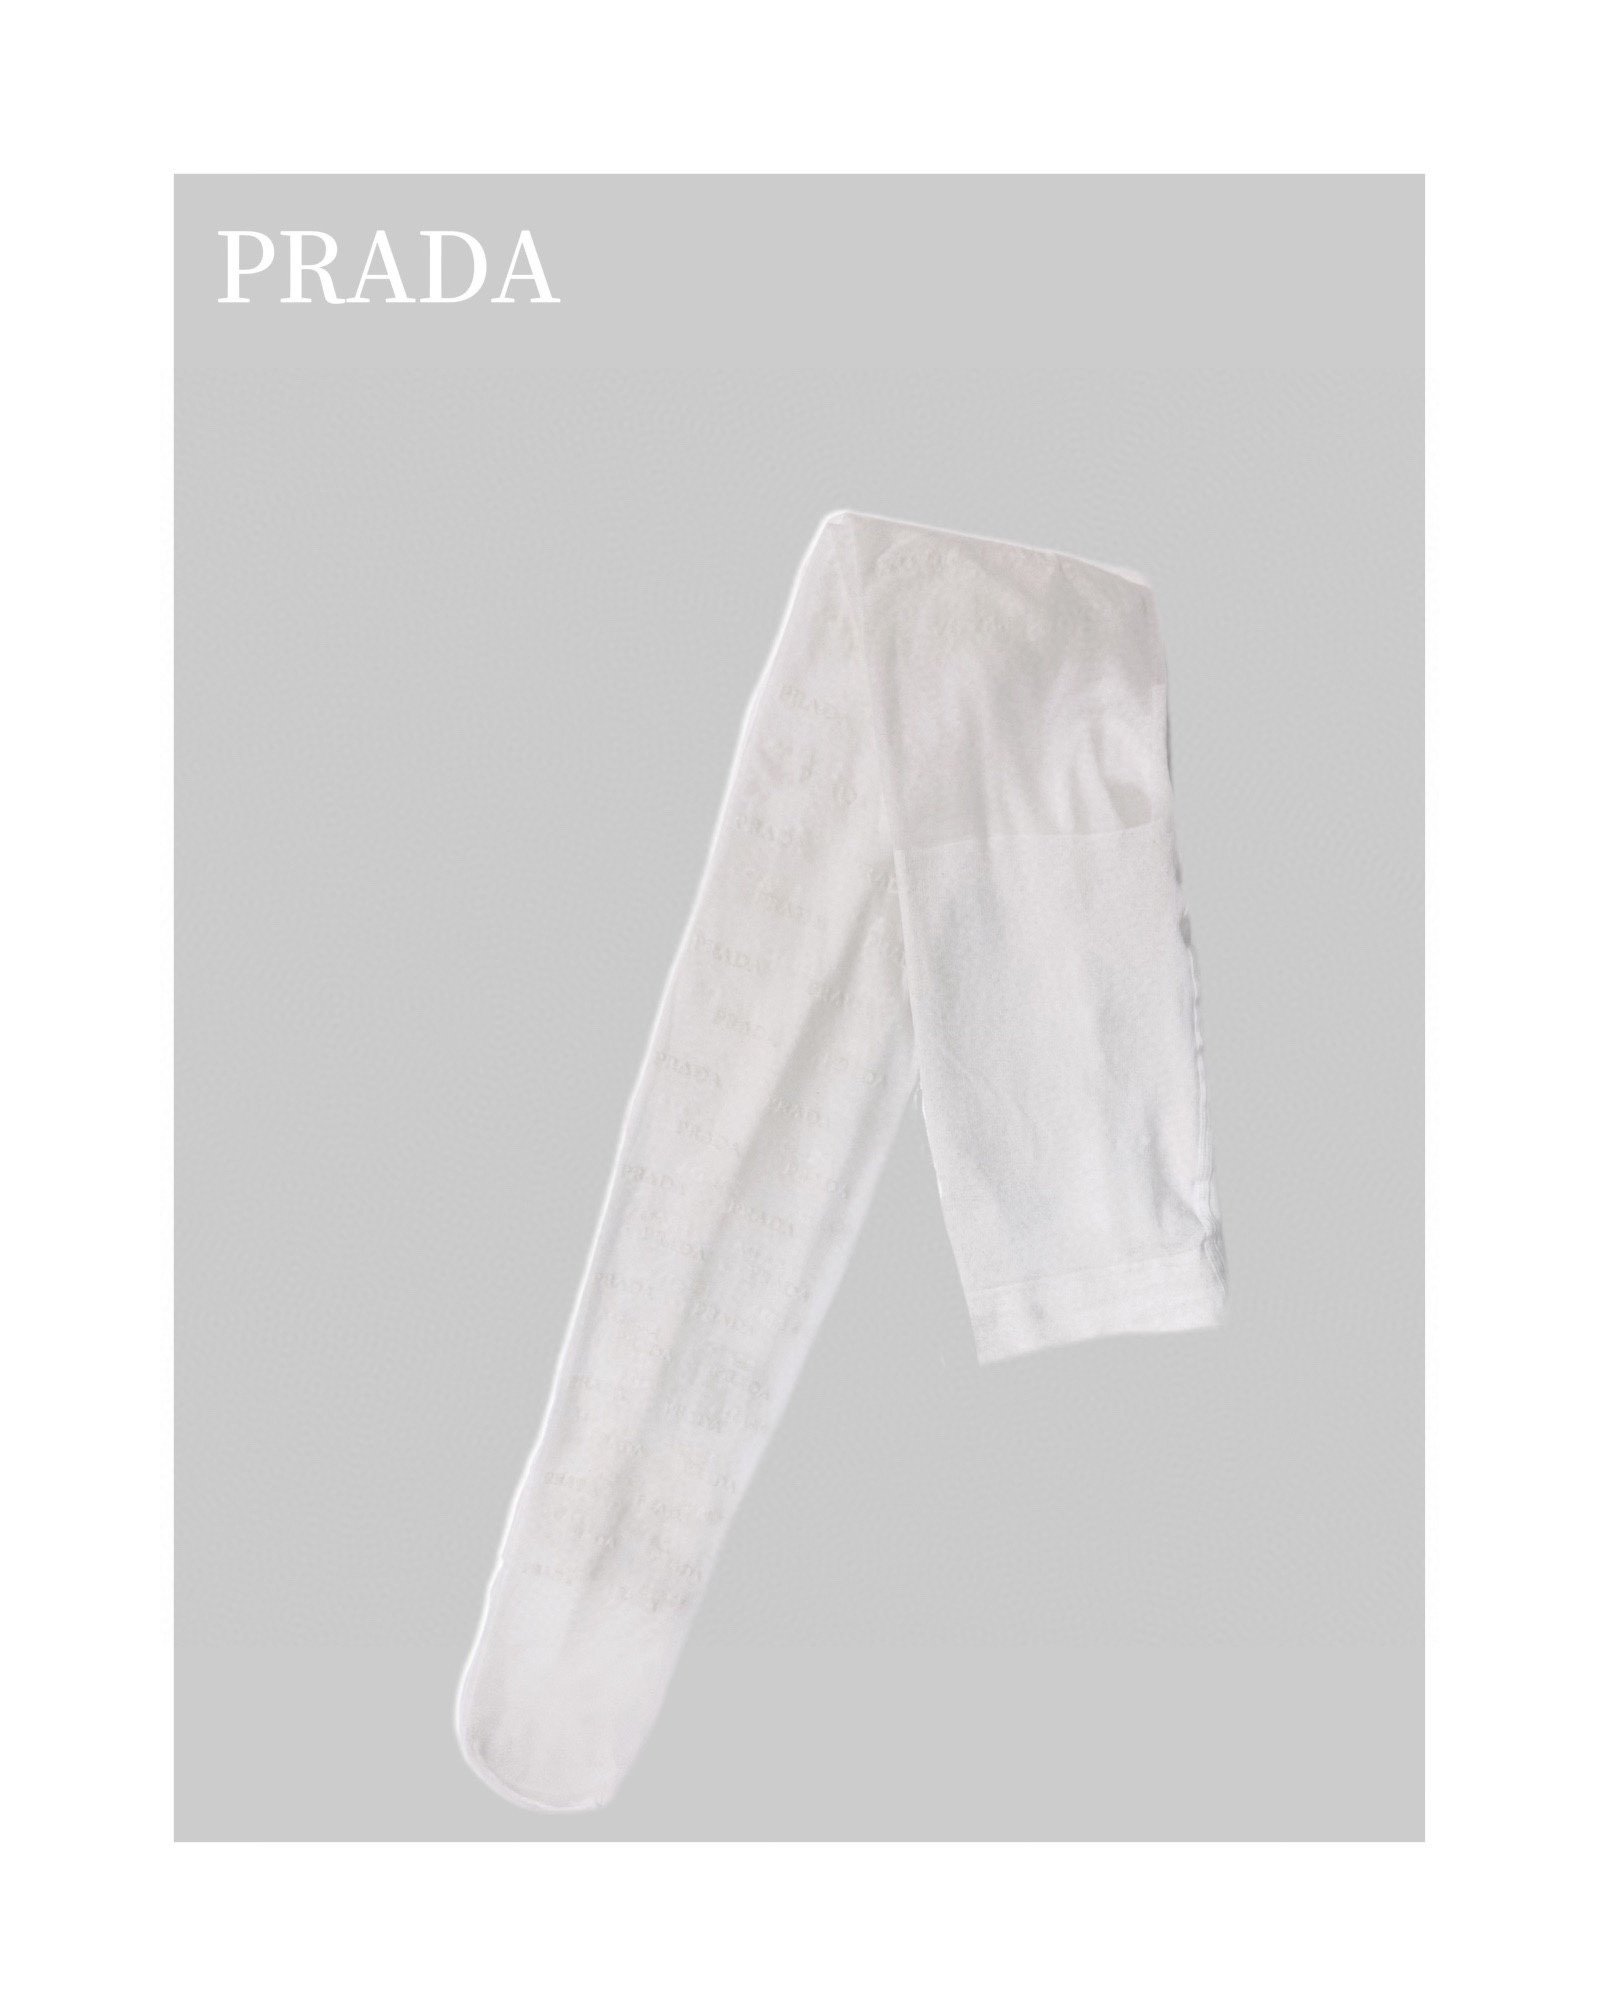 配包装一盒一双Prada普拉达经典植绒字母丝袜好看到爆炸欧美大牌丝袜一比一高版本制作可以看得到的工艺！潮